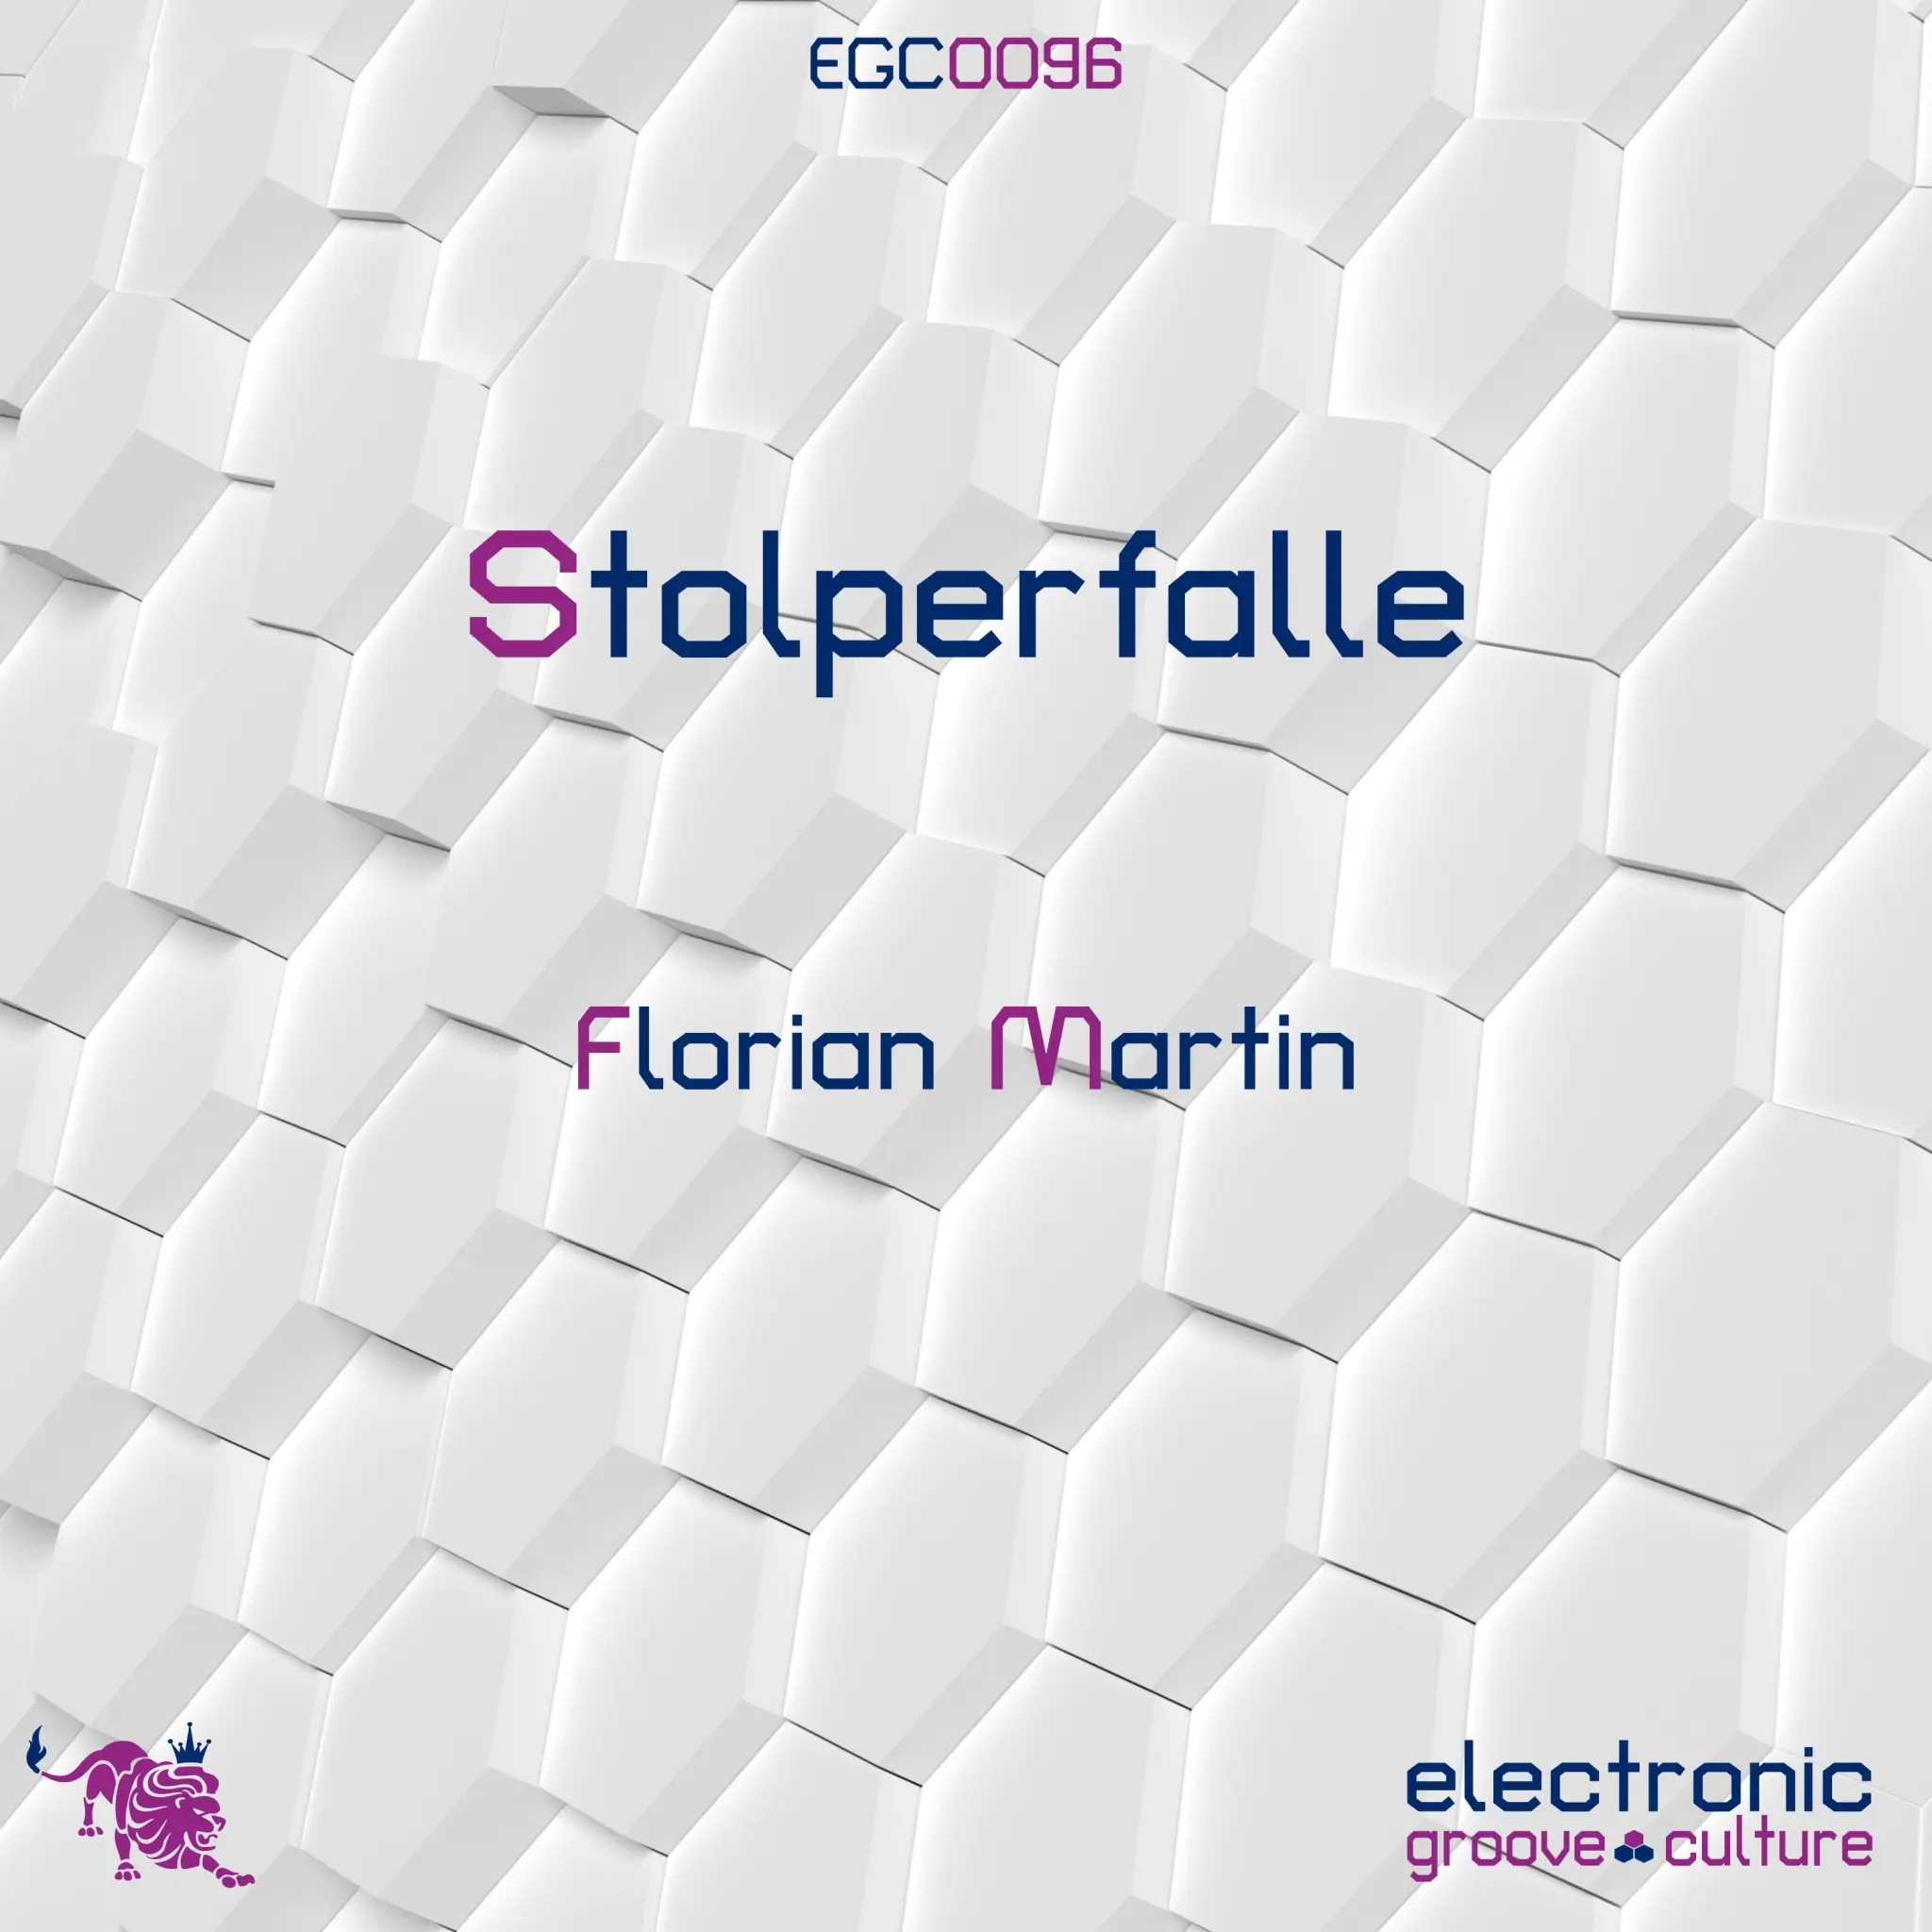 Florian Martin - Stolperfalle